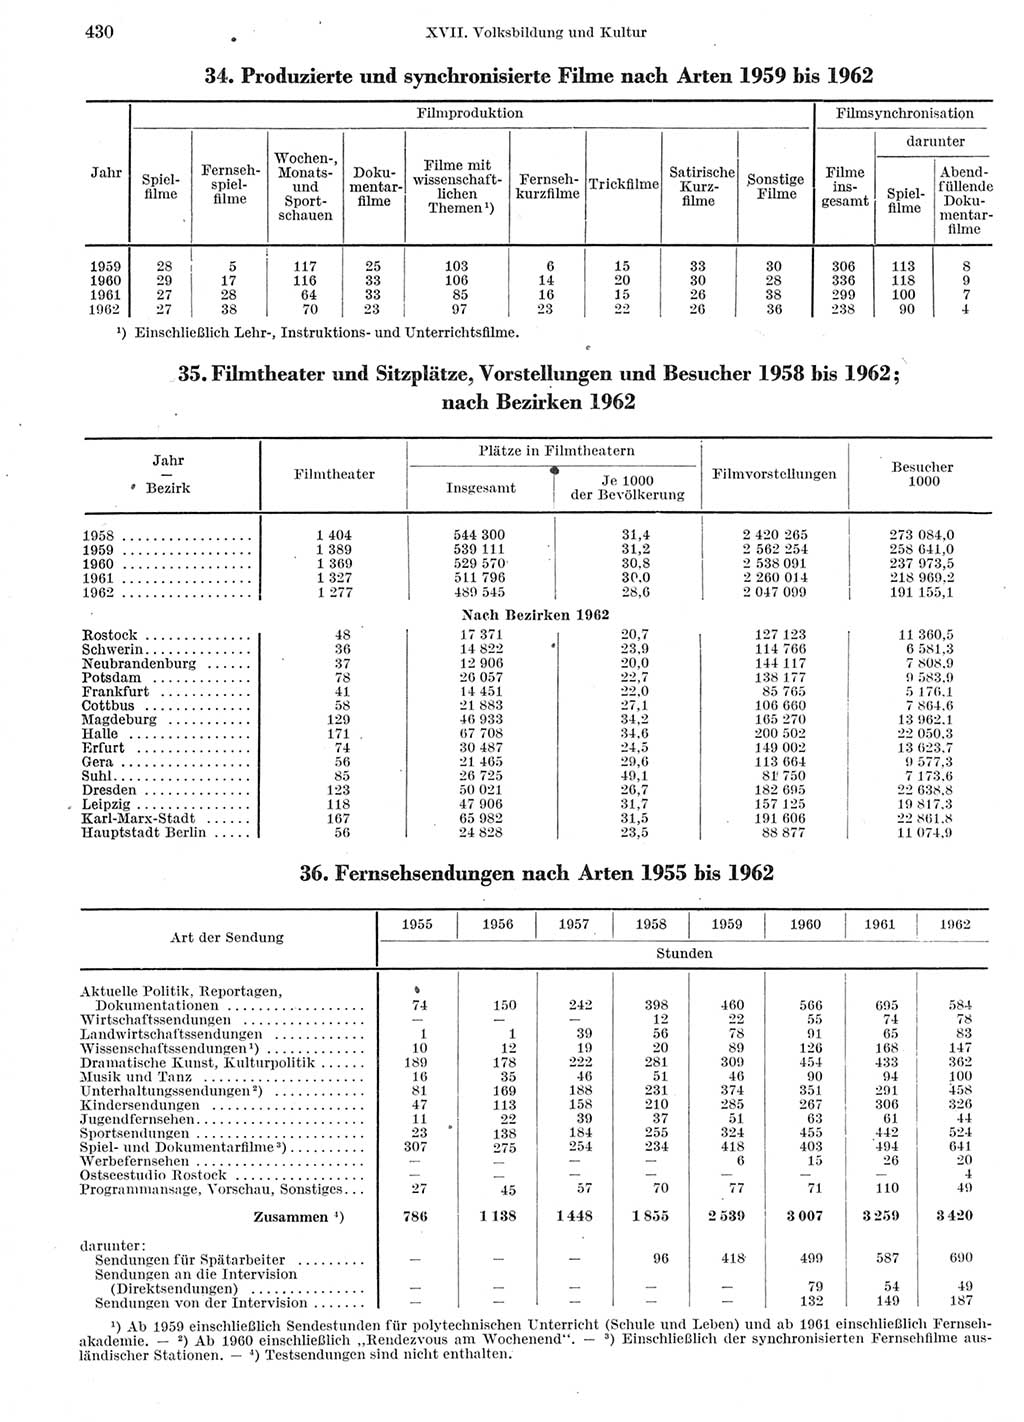 Statistisches Jahrbuch der Deutschen Demokratischen Republik (DDR) 1963, Seite 430 (Stat. Jb. DDR 1963, S. 430)